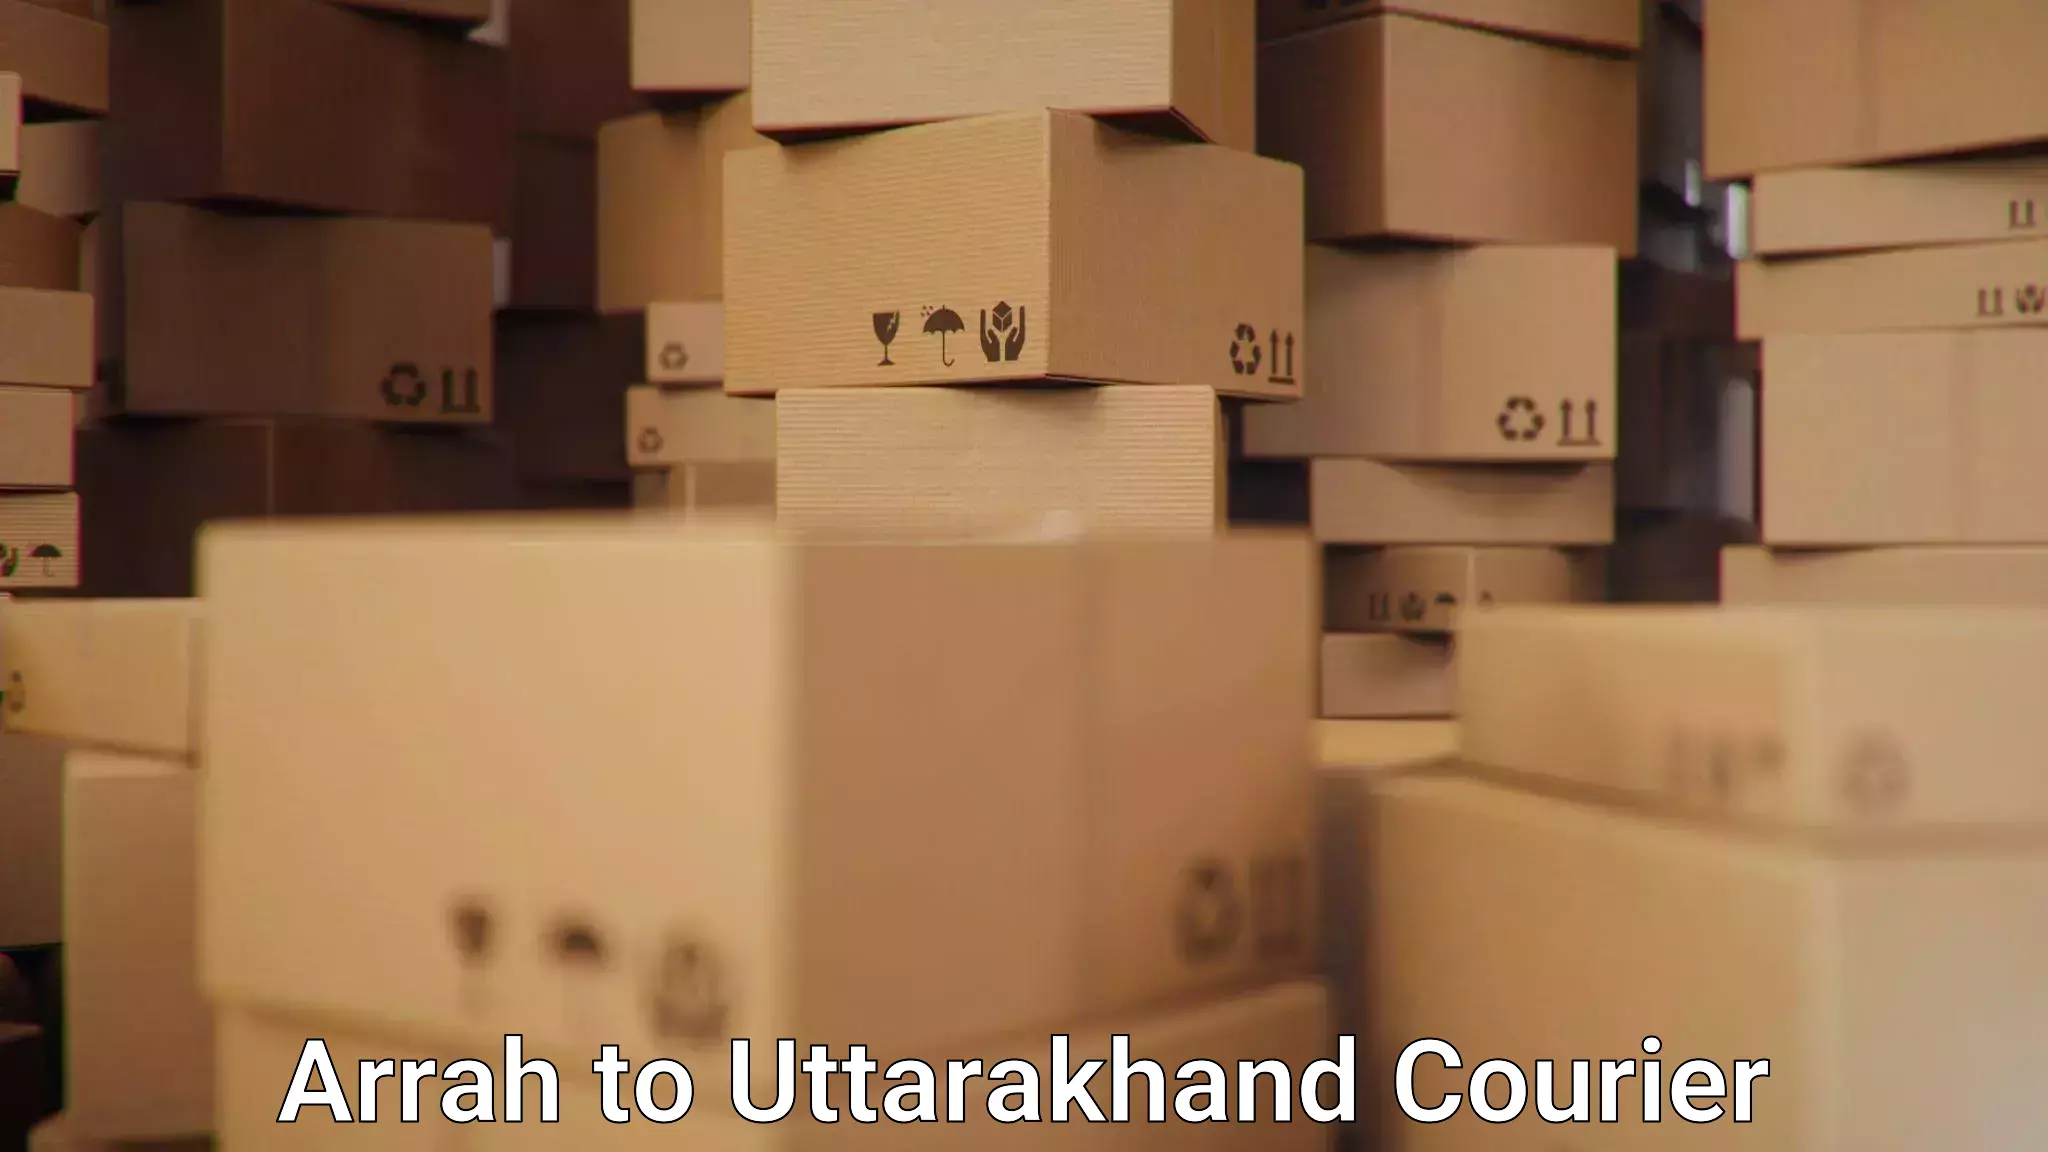 Efficient parcel service Arrah to Haridwar